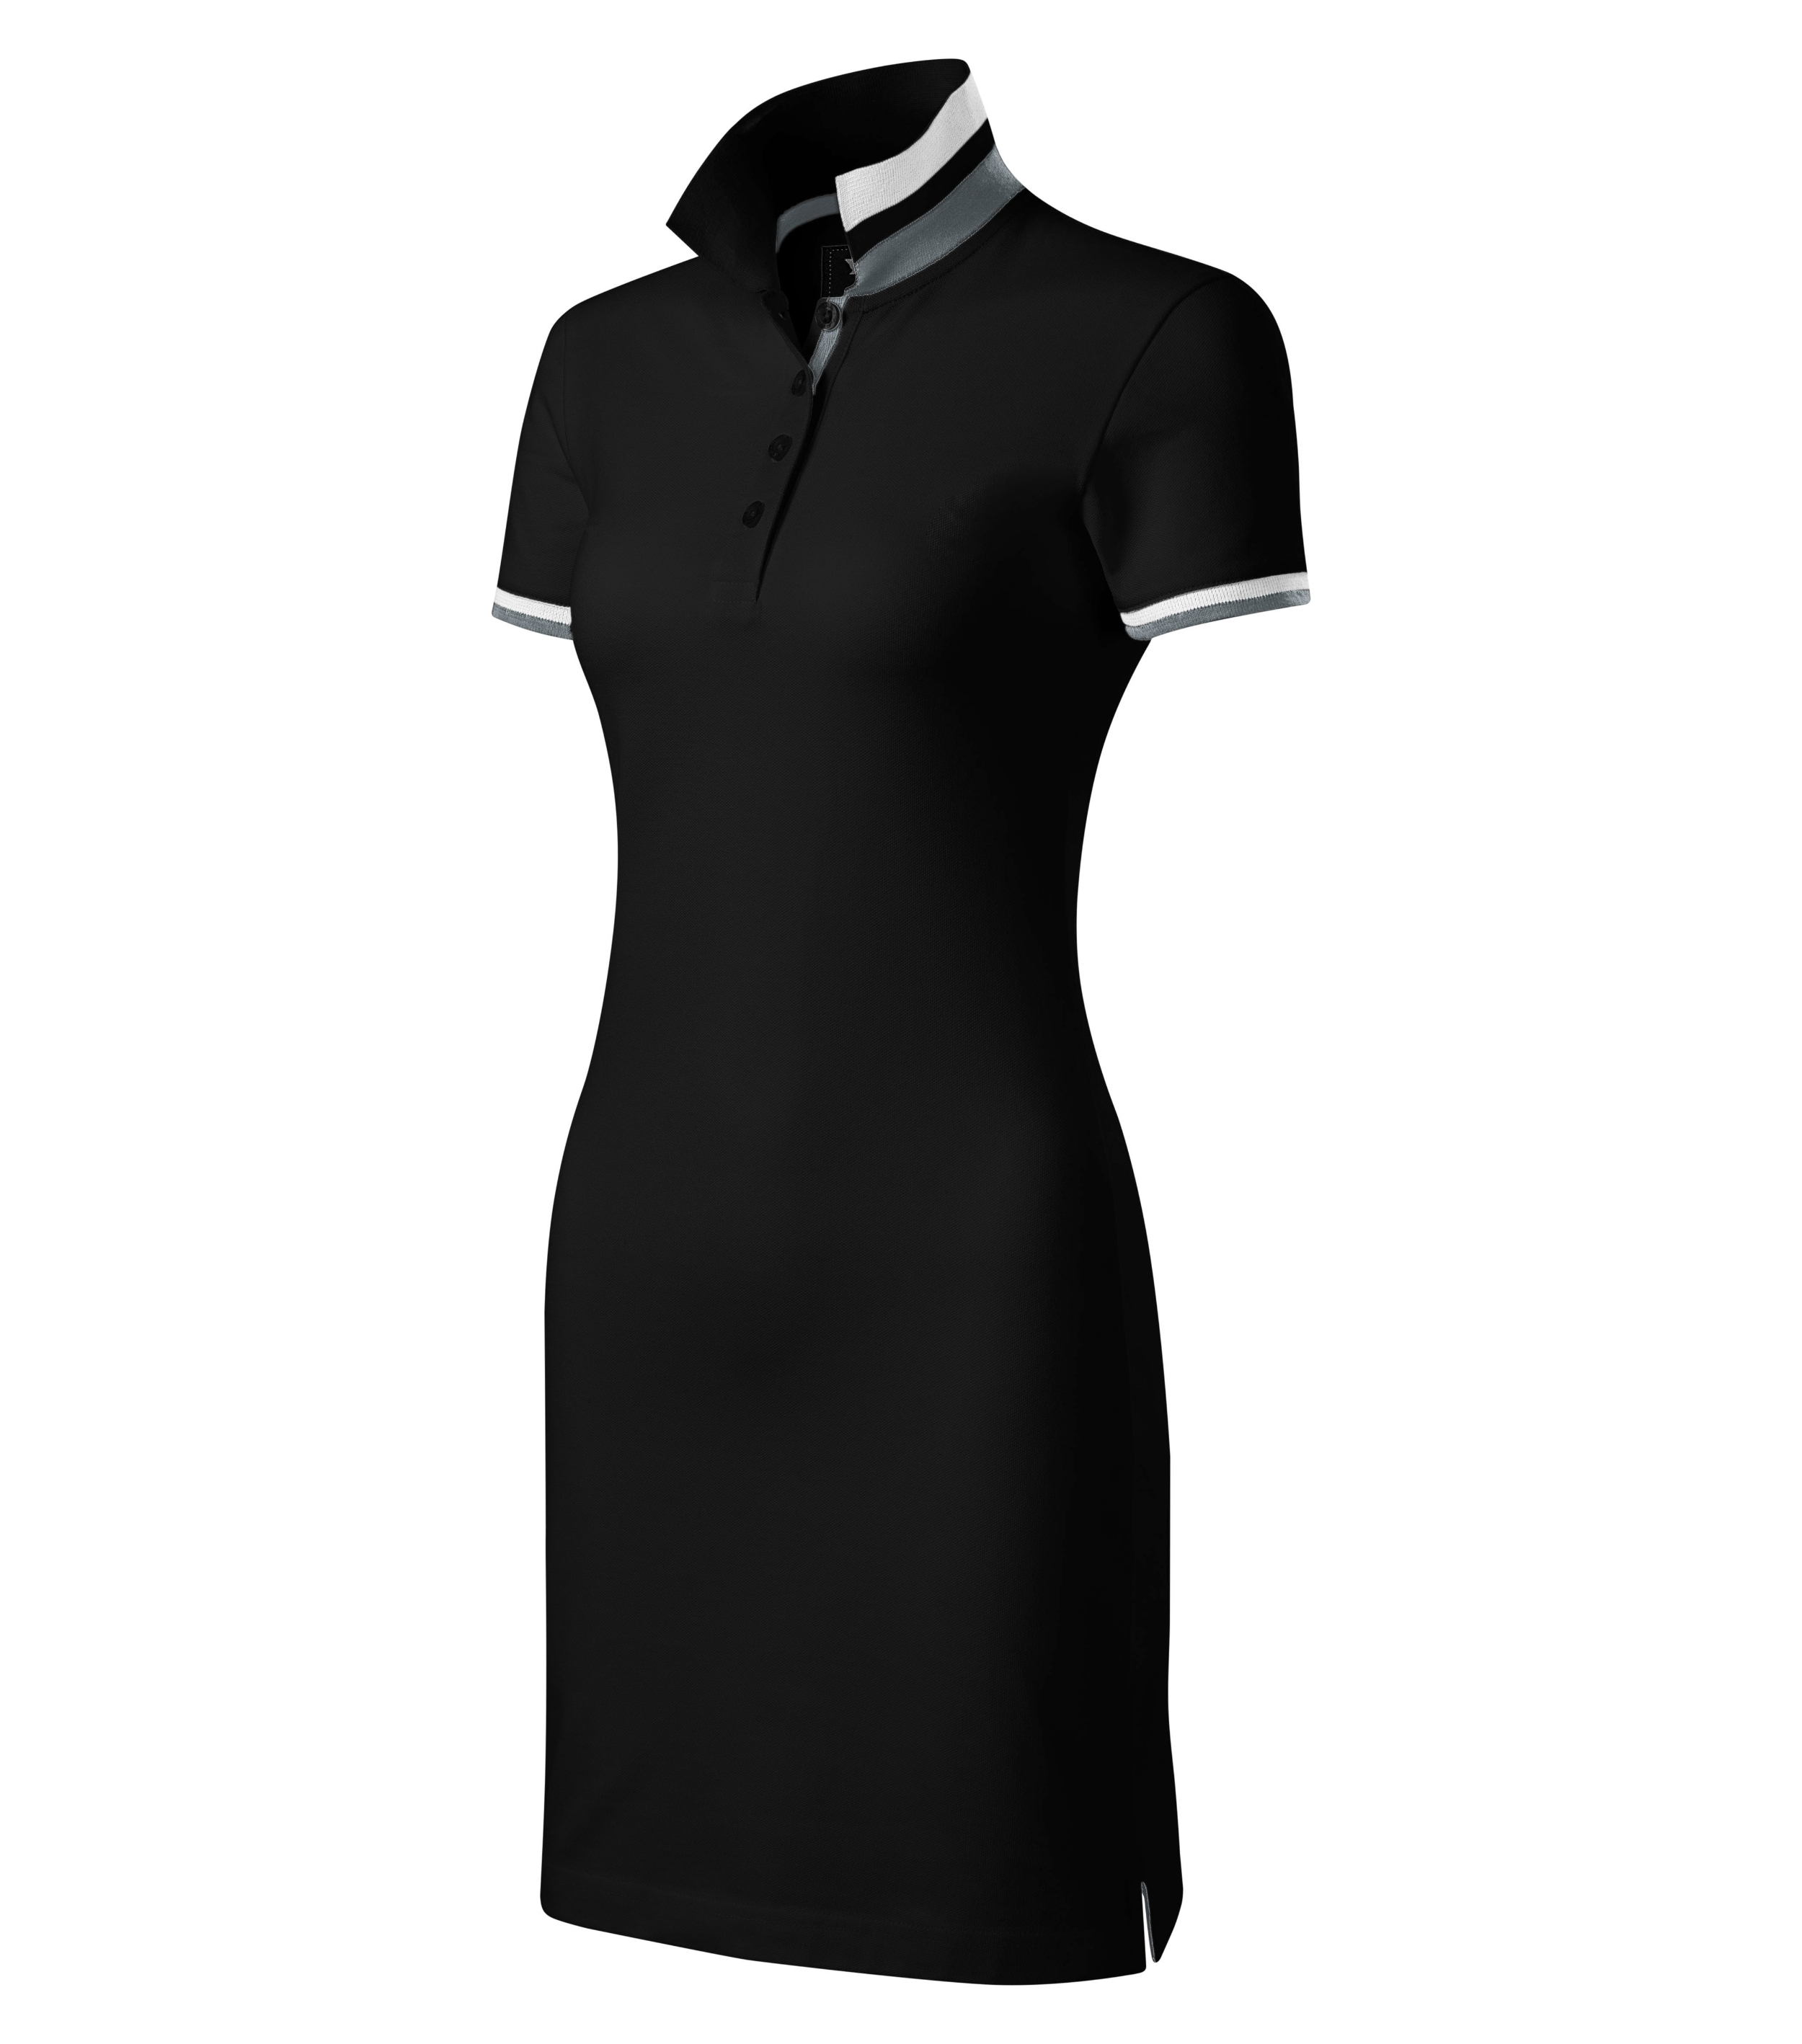 Sommerkleid Damen - DRESS UP 271 - leicht taillierter Schnitt mit Seitennähten und Schnitt mit beidseitigem Seitenschlitz und einem Kontrastband auf der unteren Knopfleiste - Sommerkleider